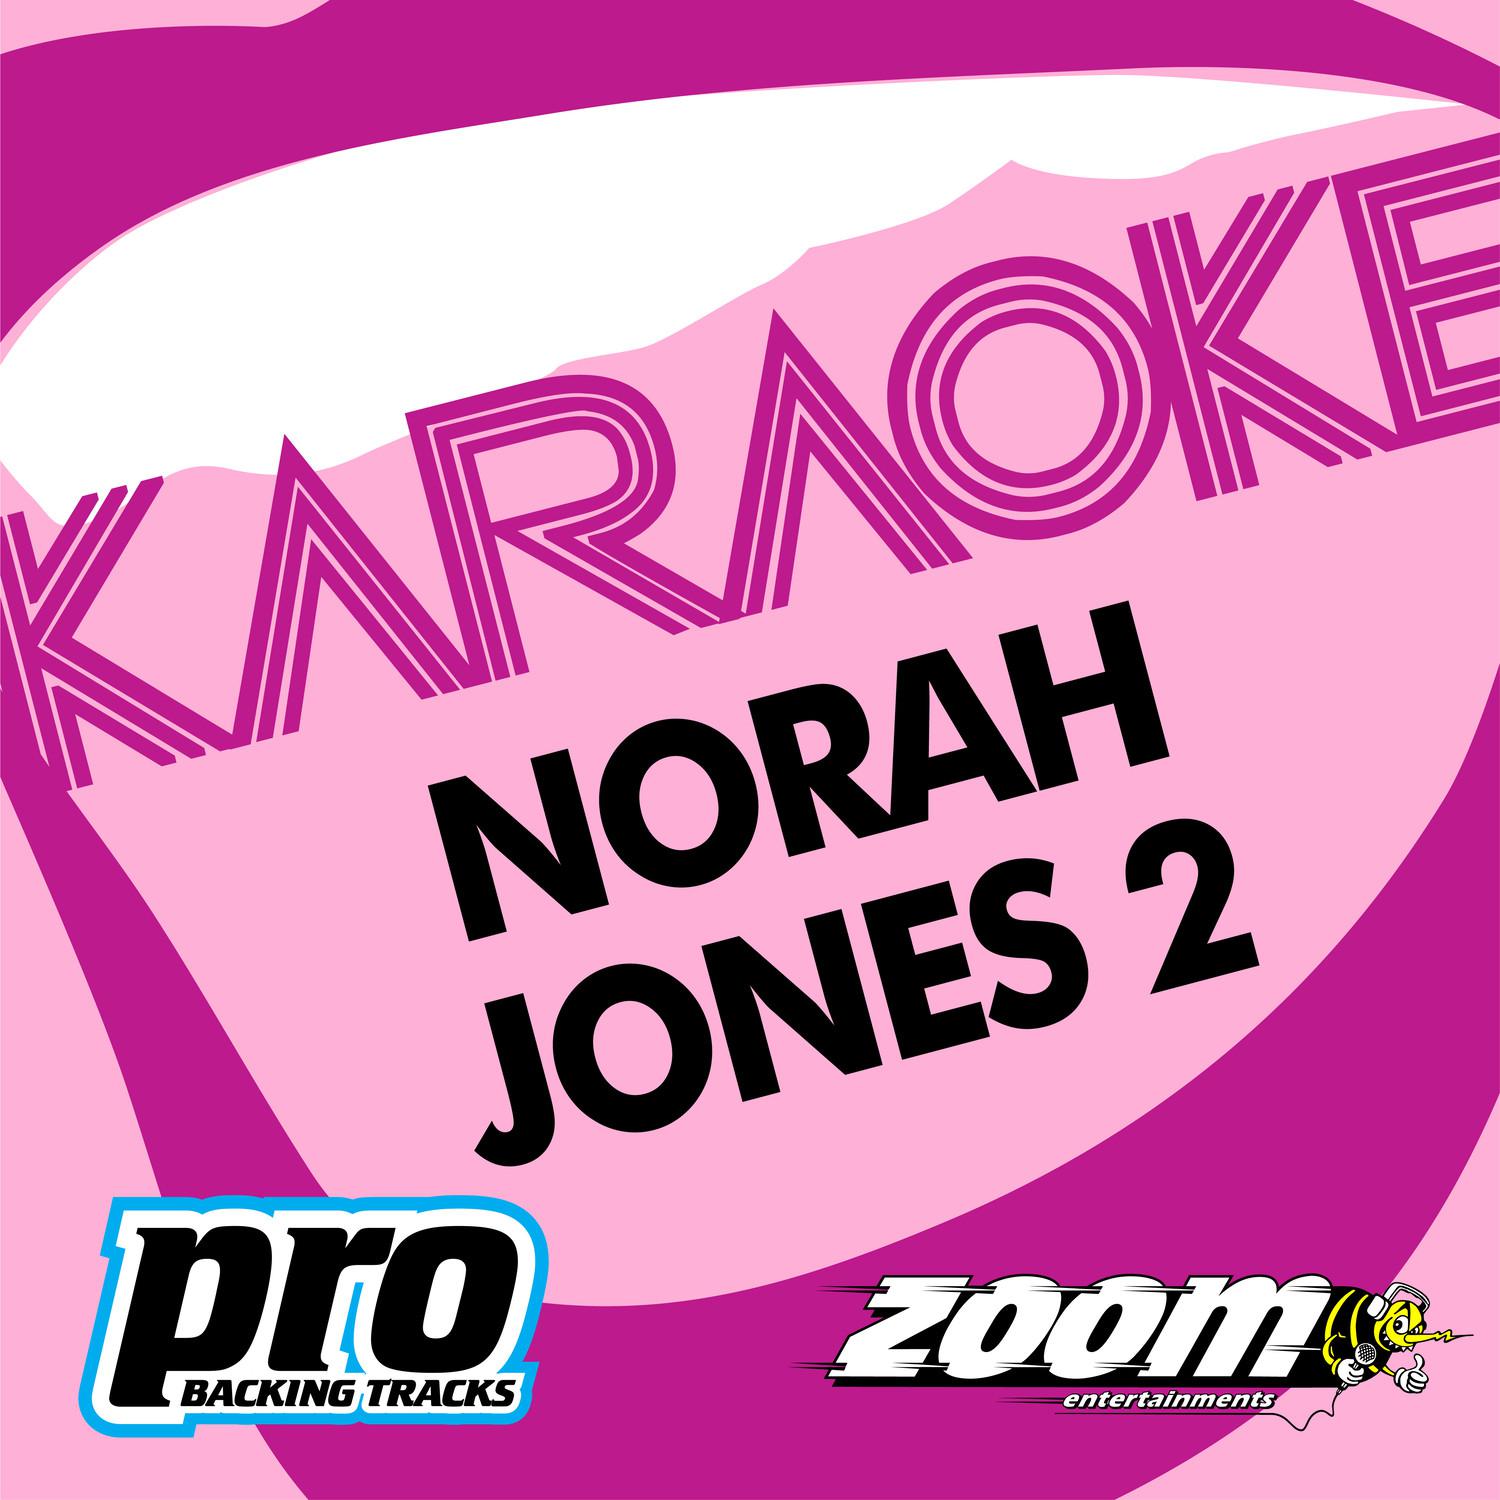 Zoom Karaoke - Norah Jones 2